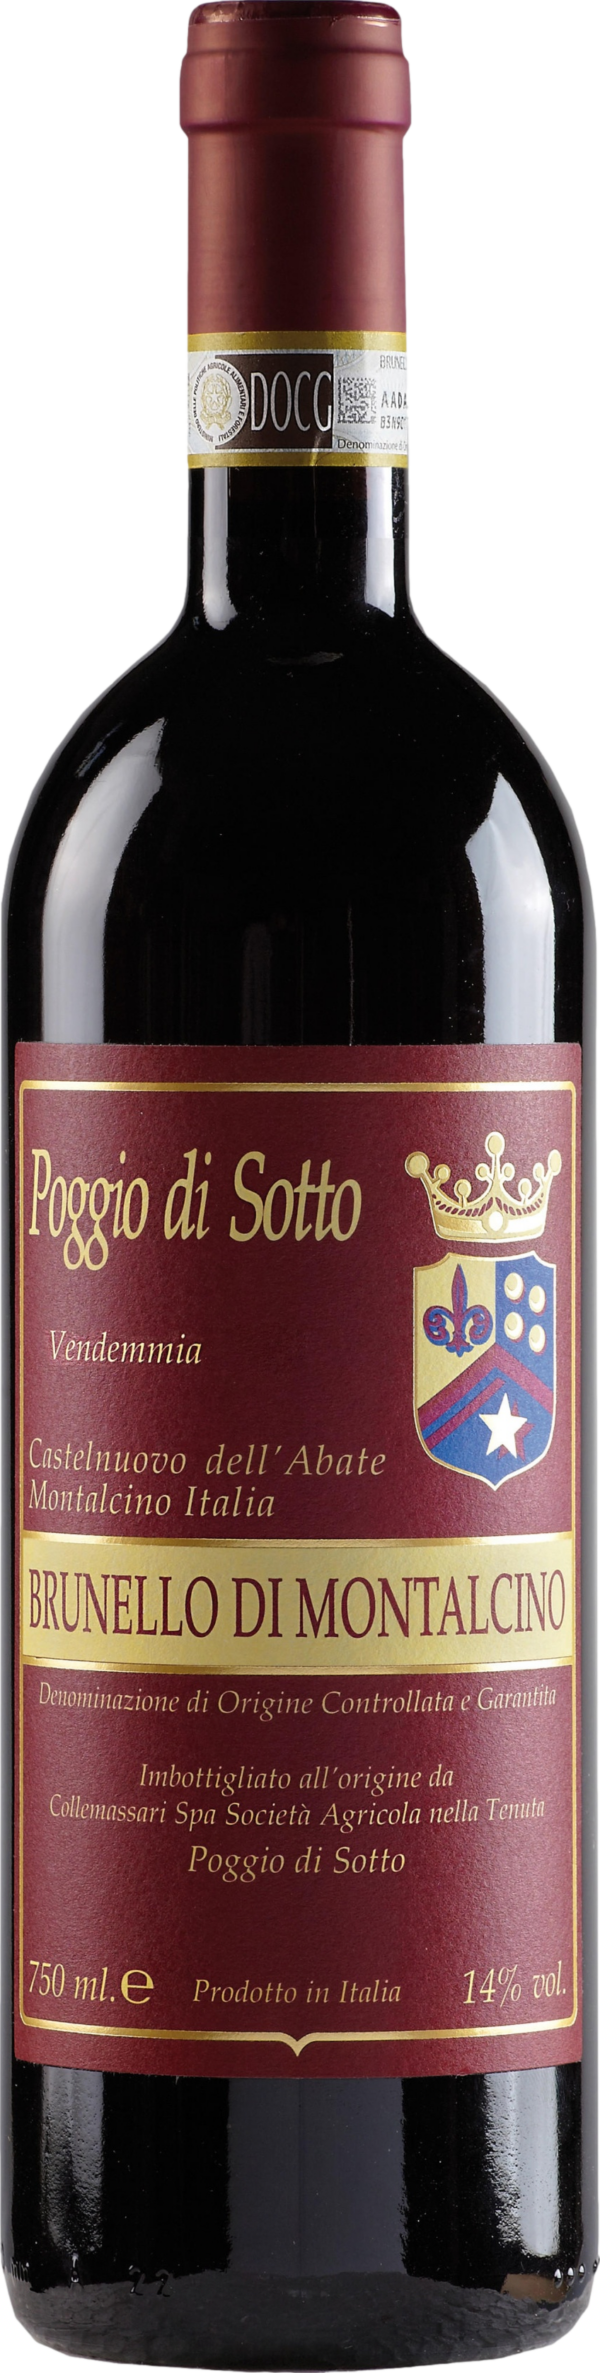 Product image of Poggio di Sotto Brunello di Montalcino 2018 from 8wines